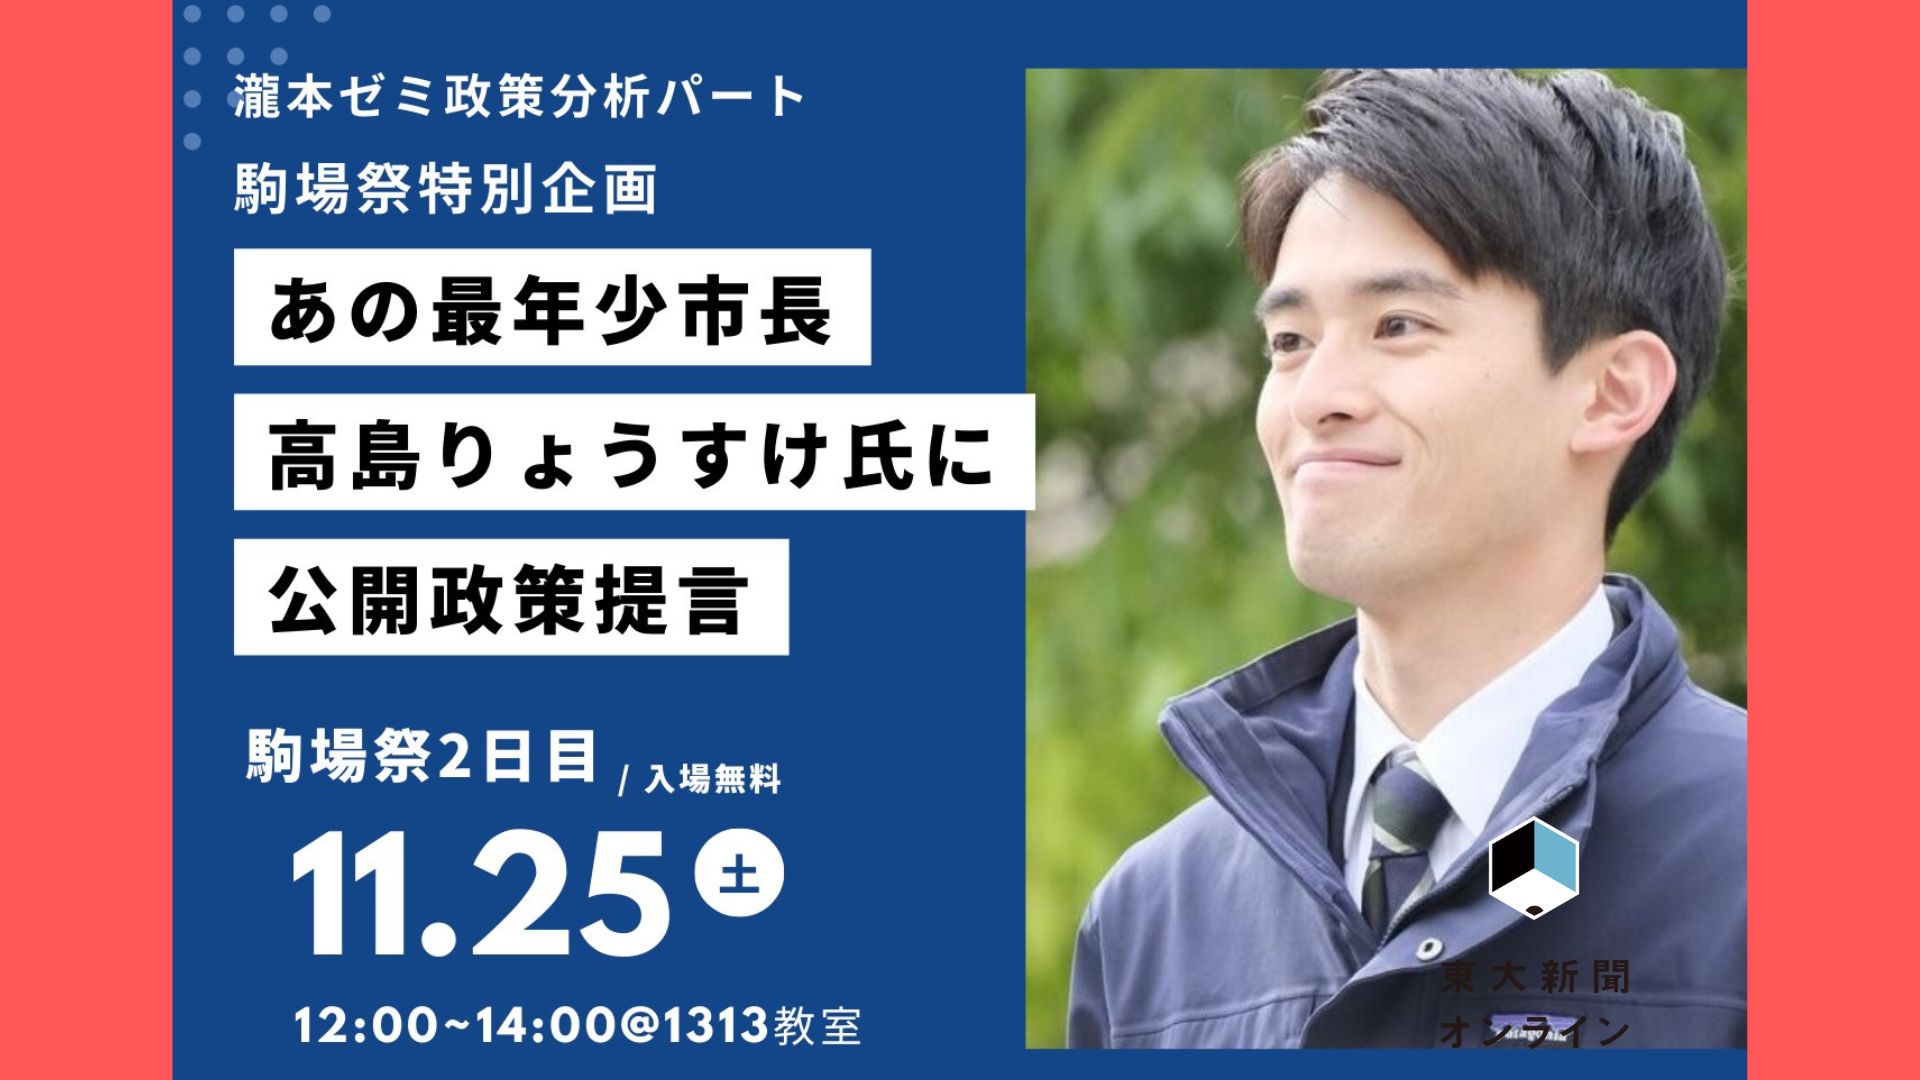 「大学生がどうやったら社会を変えられるのだろう」瀧本ゼミ政策分析パートが日本最年少市長へ公開政策提言